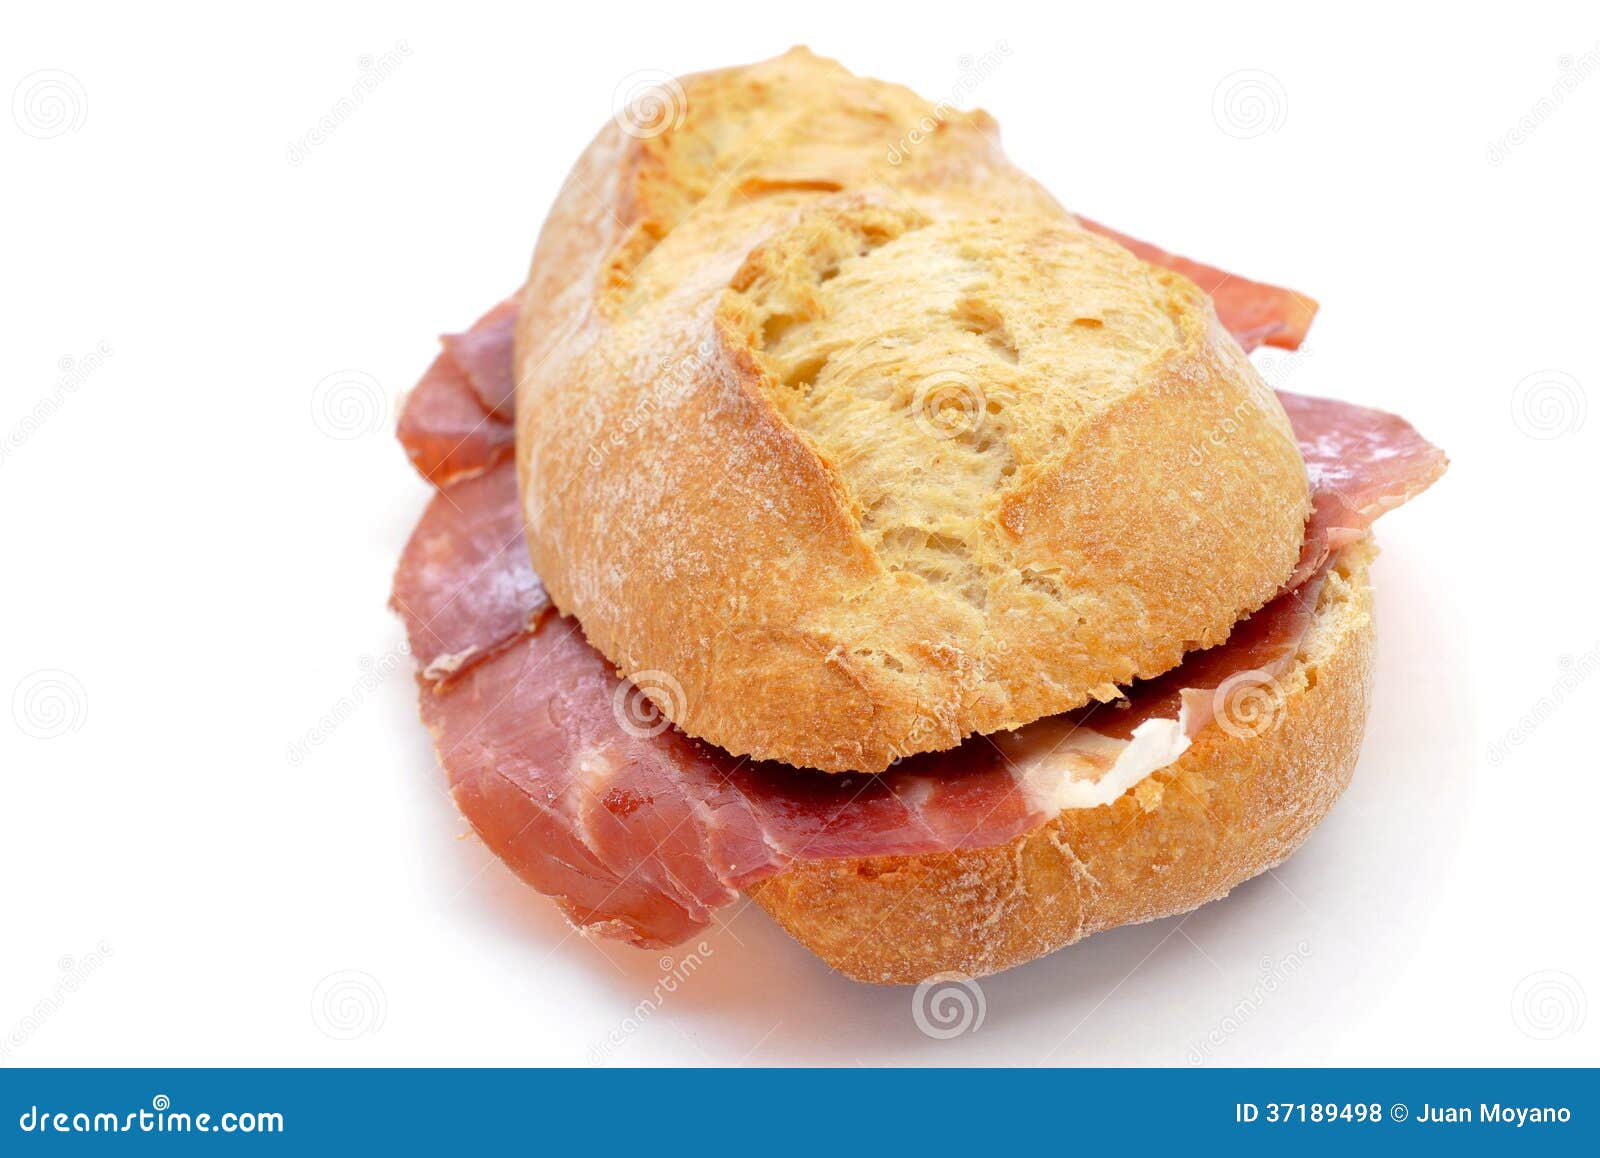 spanish bocadillo de jamon serrano, a serrano ham sandwich